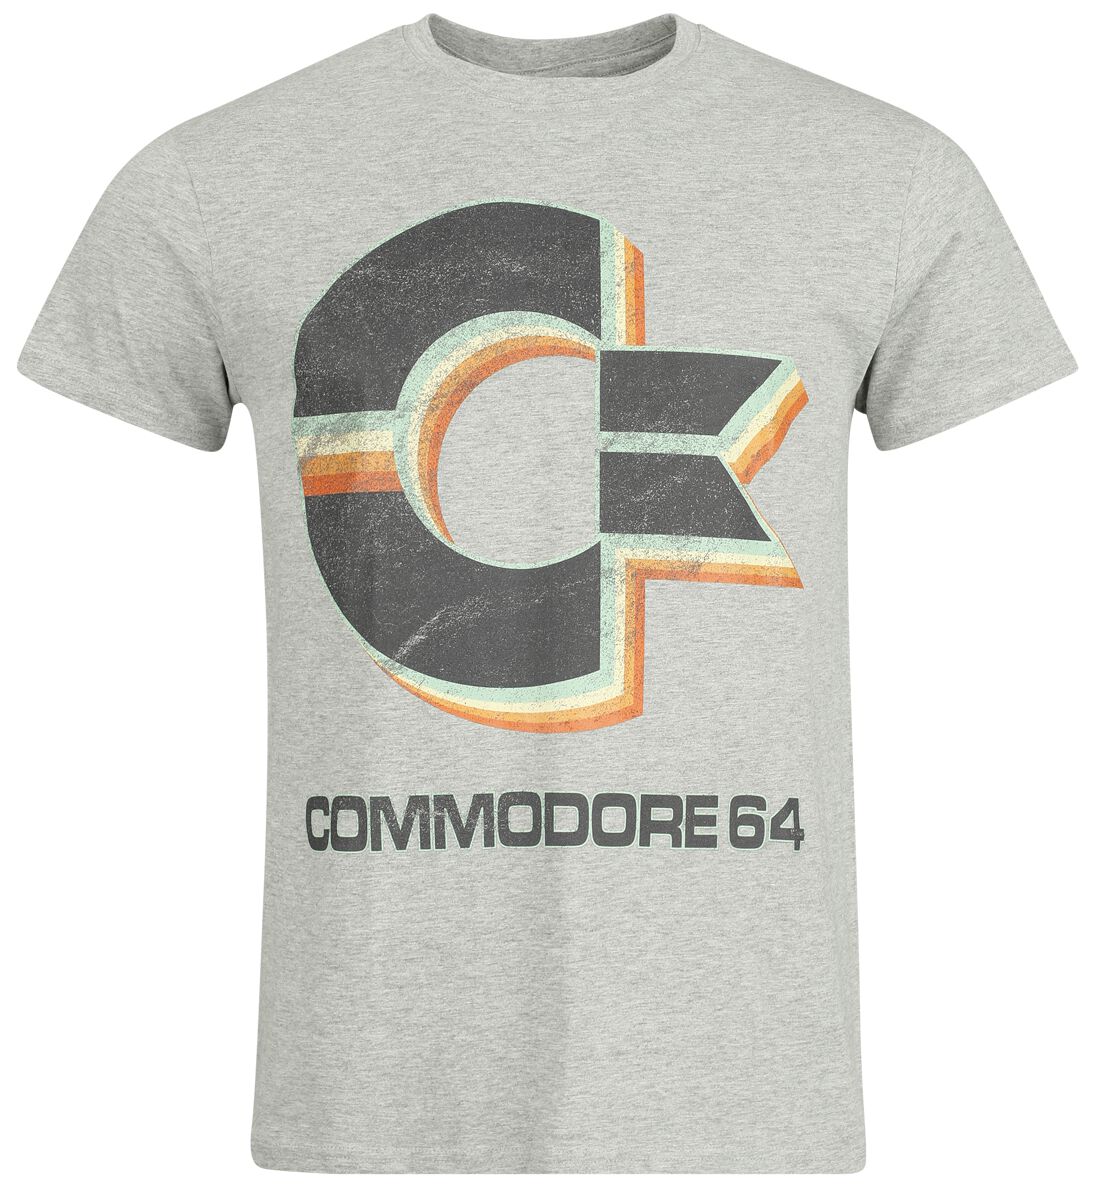 Commodore 64 - Gaming T-Shirt - Retro Logo - S bis XXL - für Männer - Größe L - grau meliert  - EMP exklusives Merchandise!